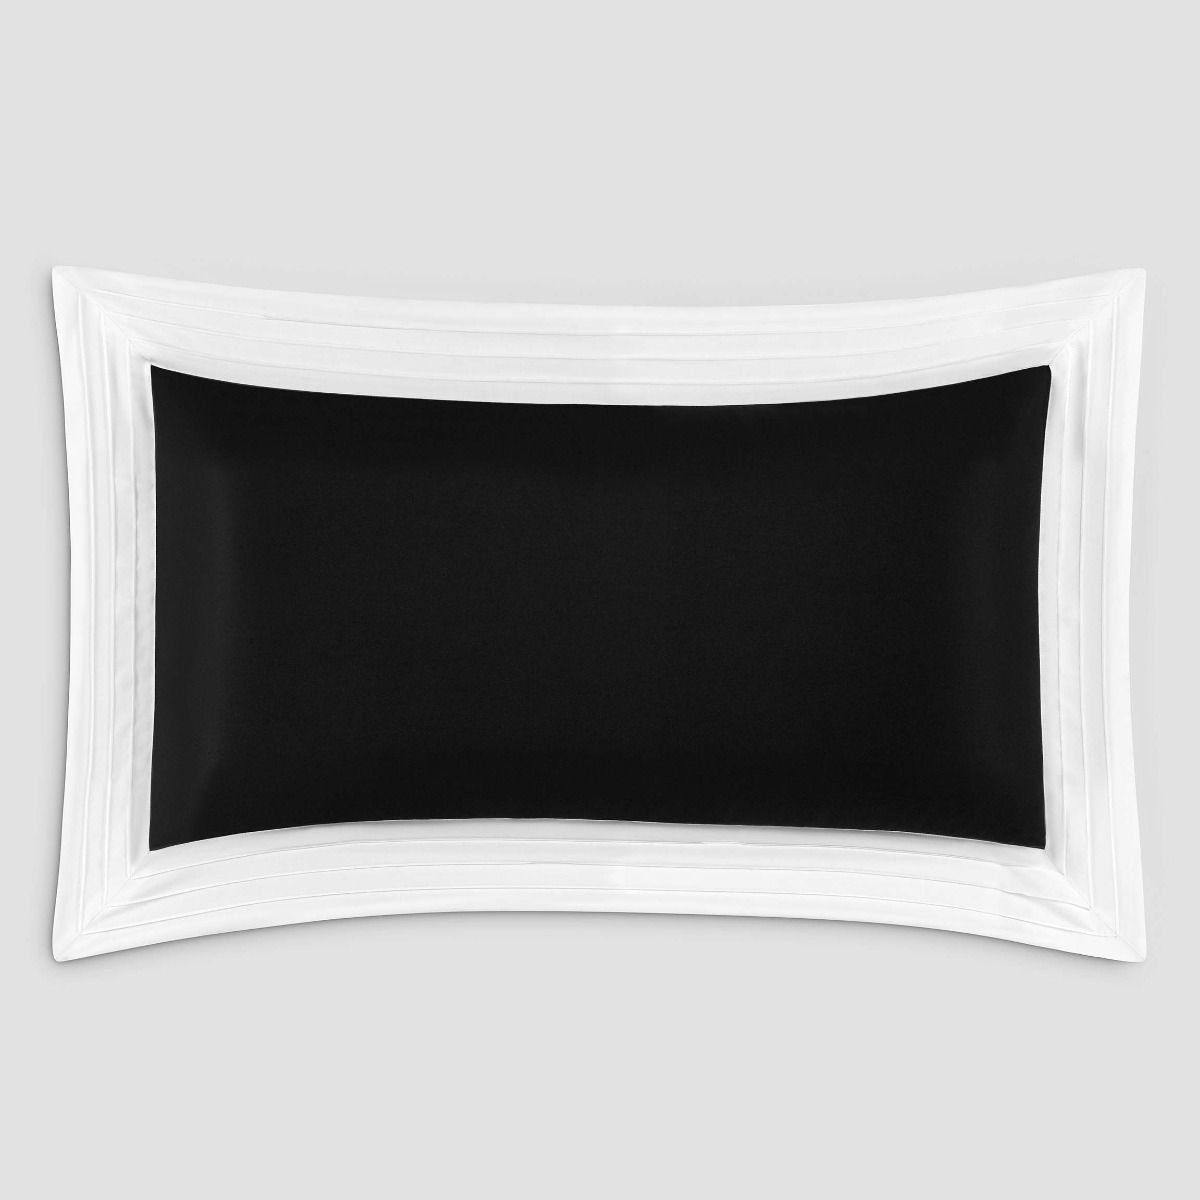 Комплект наволочек Togas Эдем черный/белый 50х90, 2пр комплект полотенец togas аннами серый белый 2пр